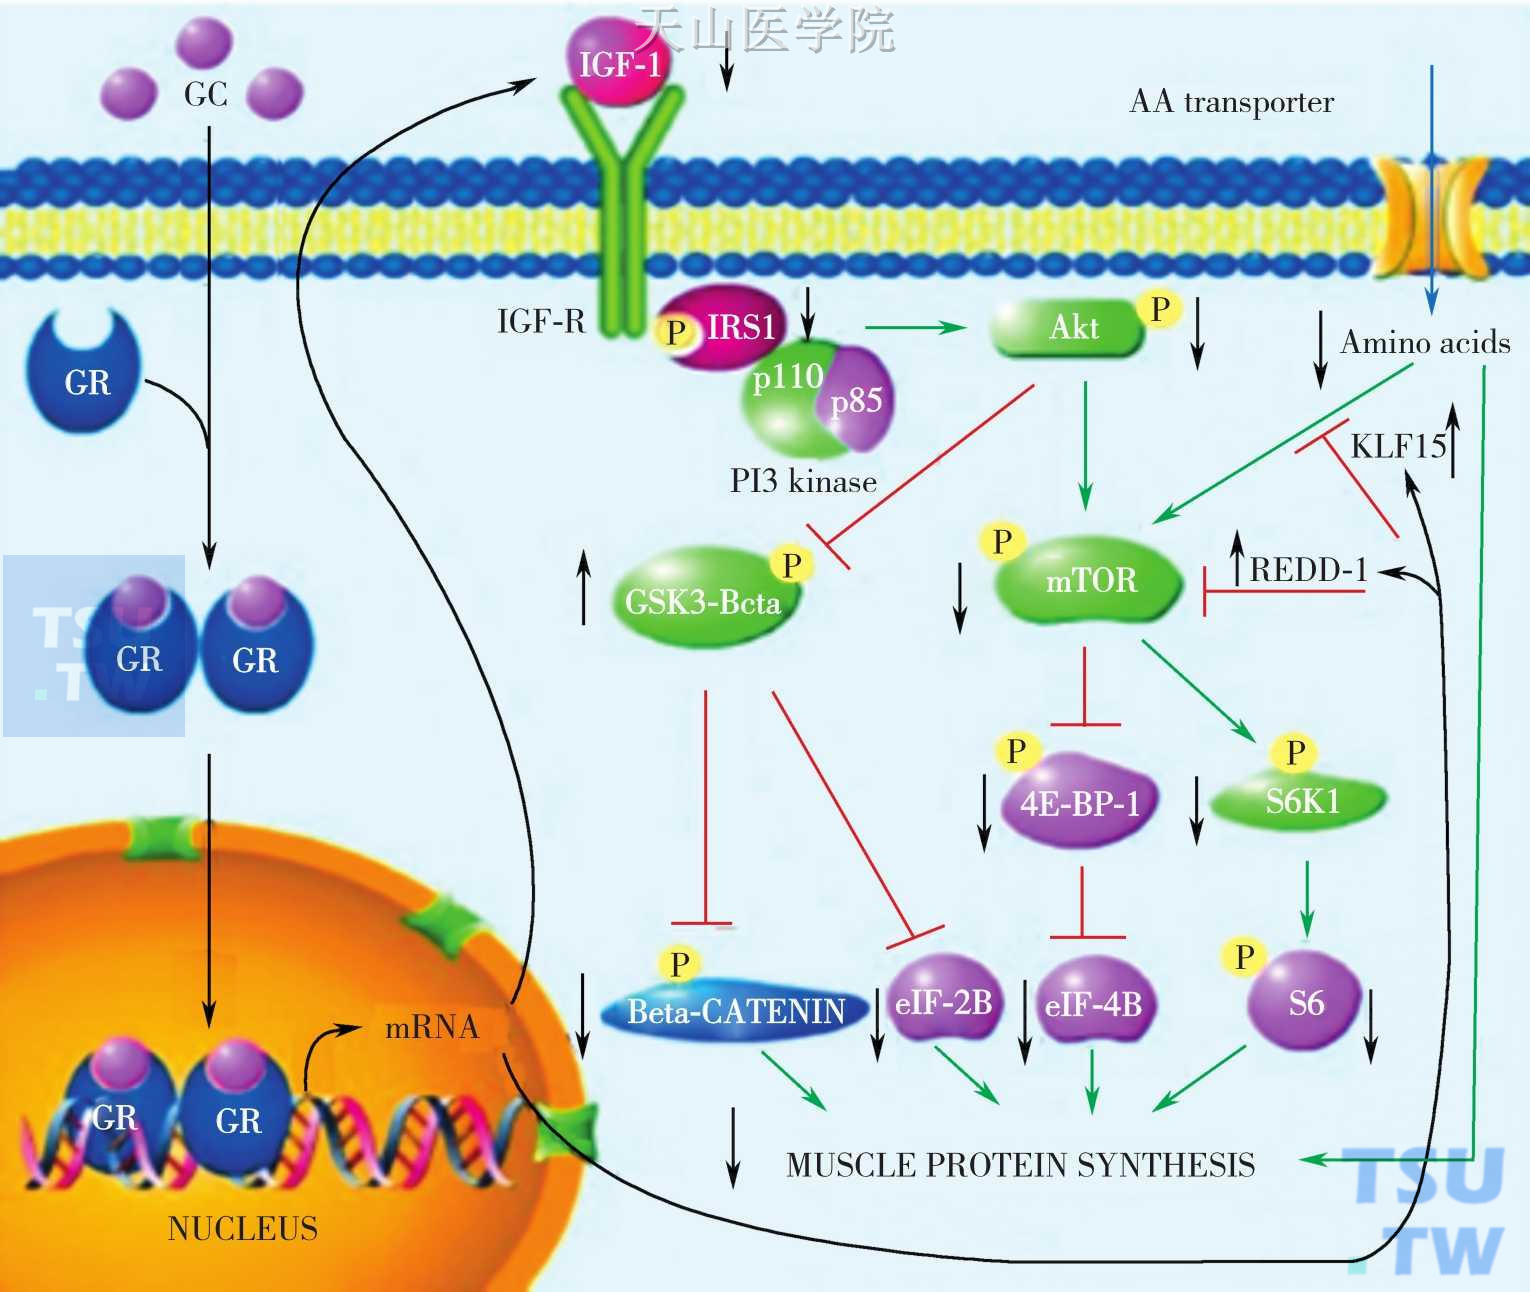 糖皮质激素通过抑制mTORC1来达到抑制蛋白合成